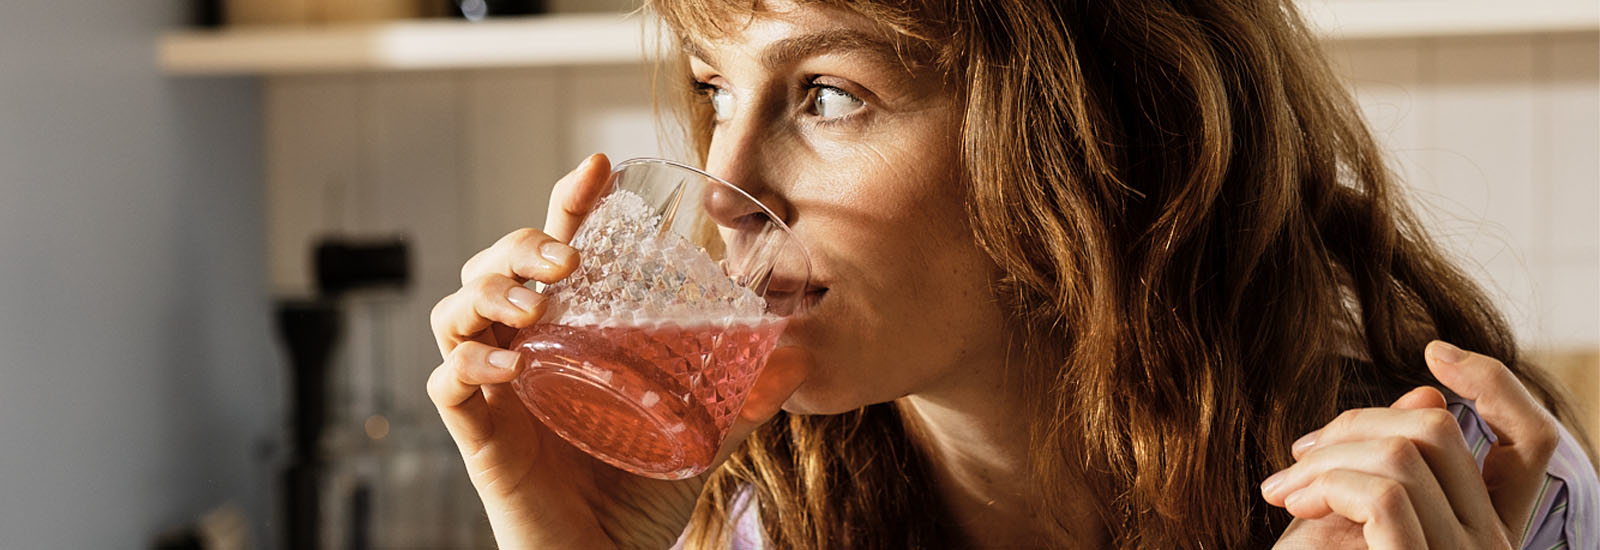 foto van vrouw met glas drinken